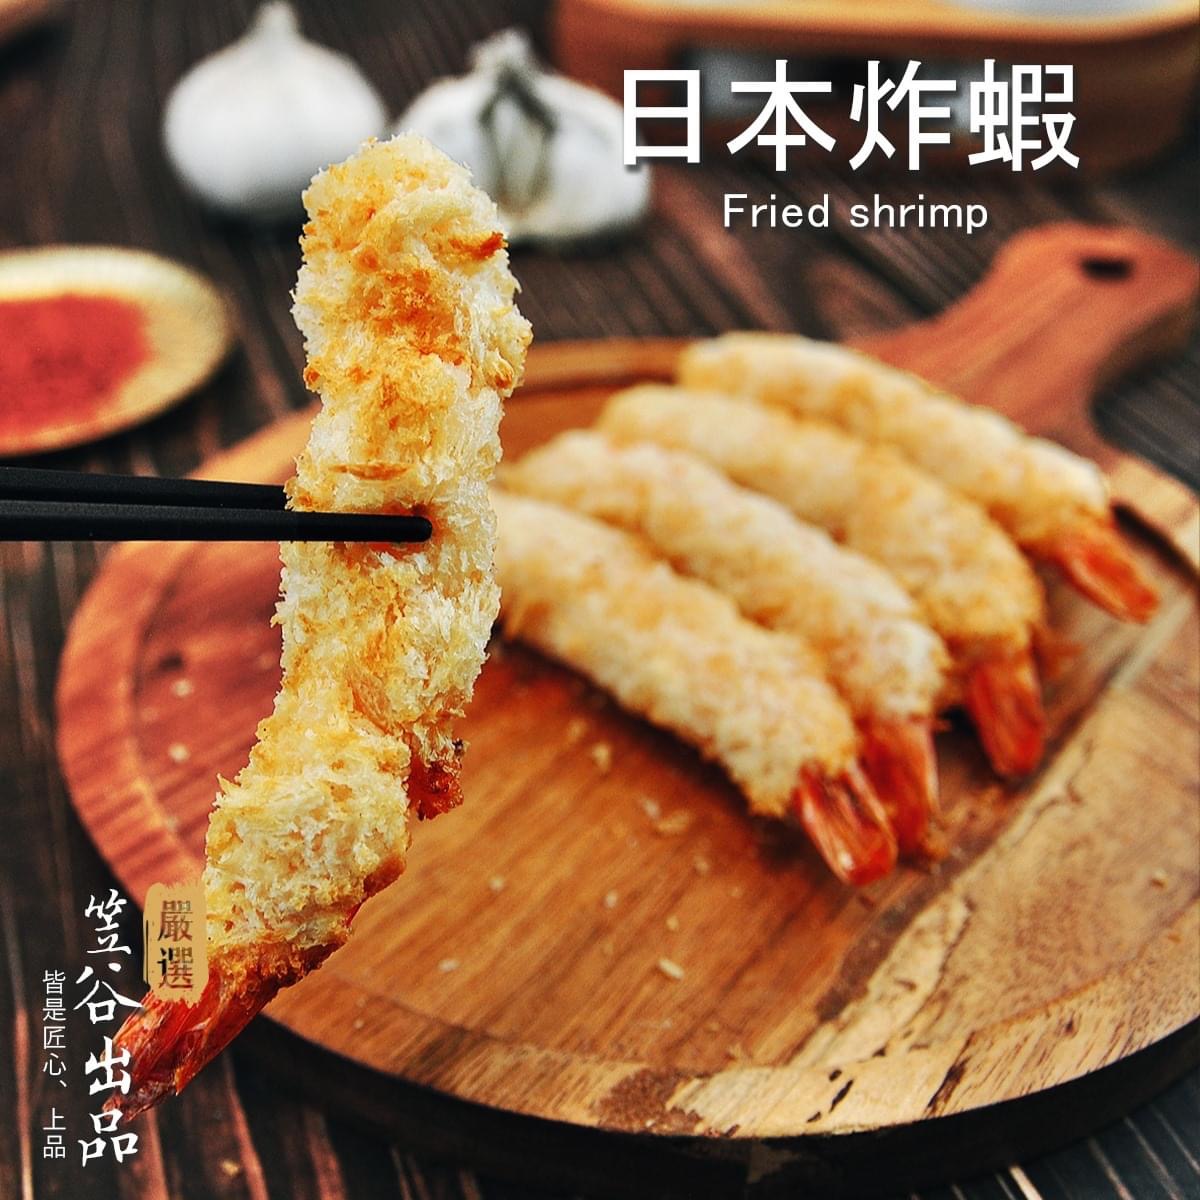 【中字】日本料理101-日式炸虾的做法_美食圈_生活_bilibili_哔哩哔哩